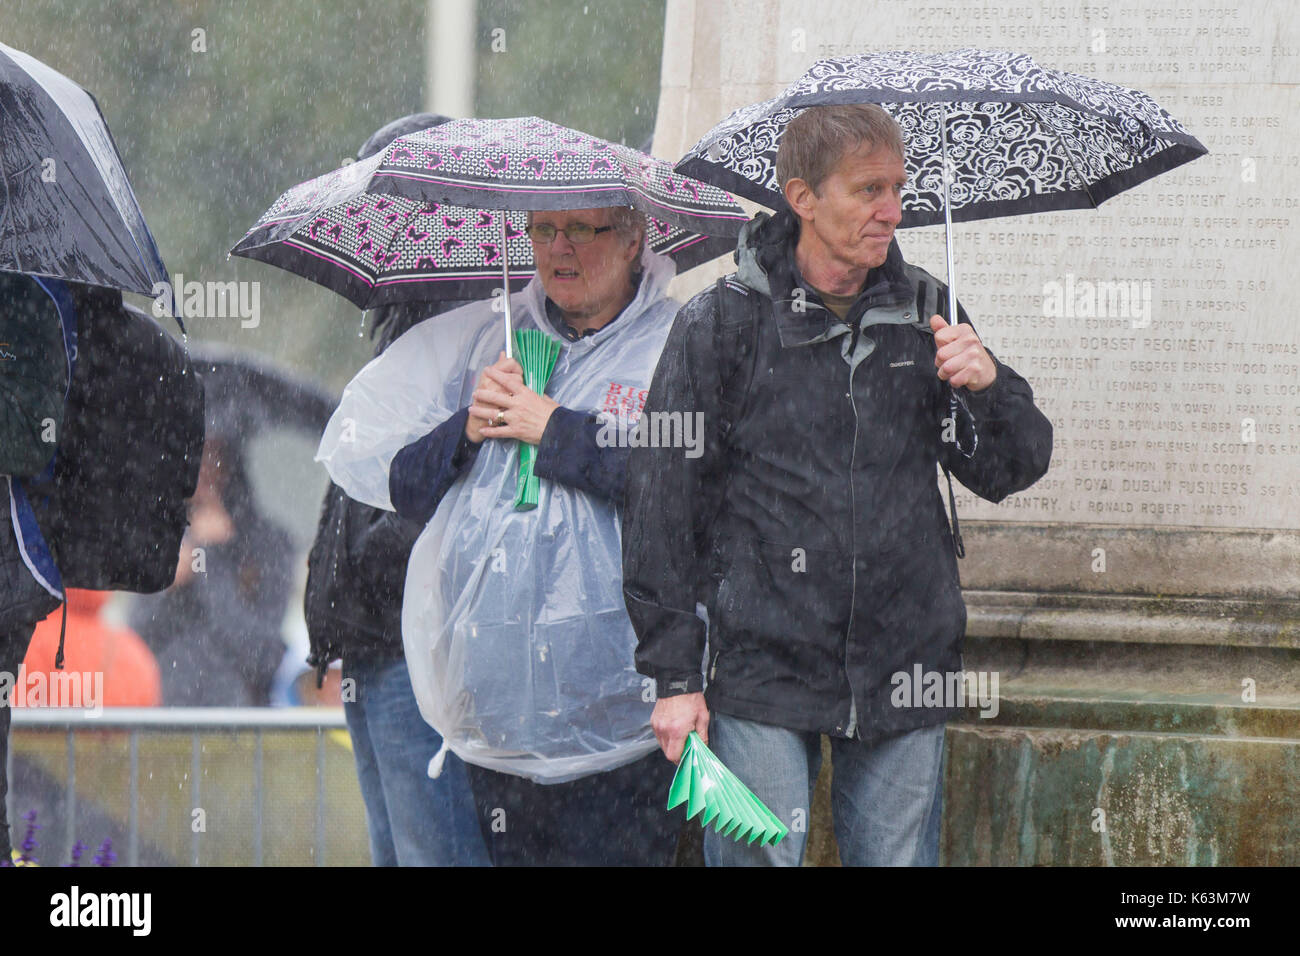 Cardiff Wales, Regno Unito, 10 settembre 2017. La folla coraggioso il tempo umido durante la fase finale dell'ovo energy tour della Gran Bretagna. Foto Stock